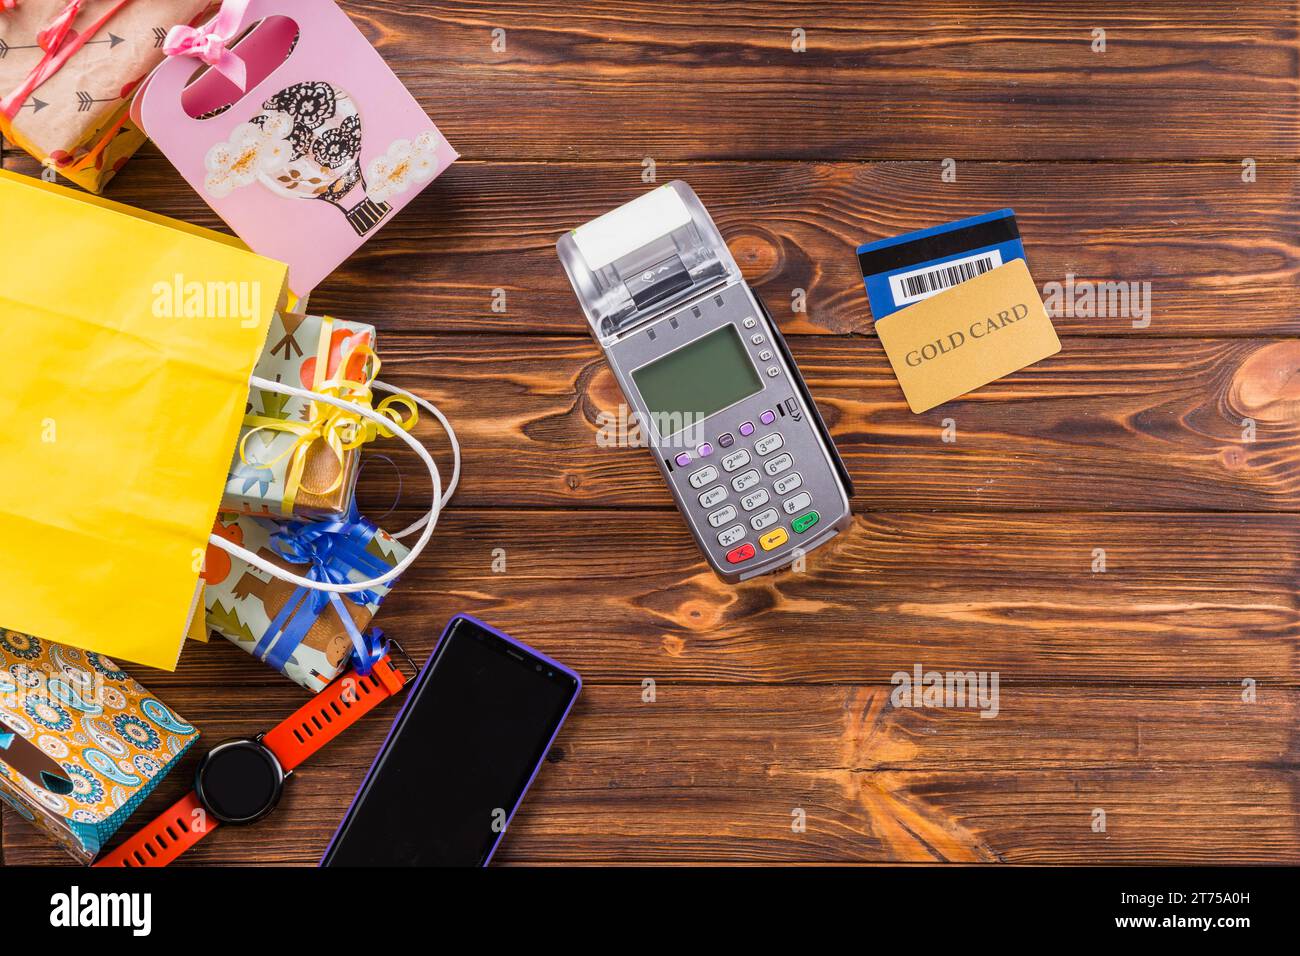 Orologio da polso in scatola, terminale di pagamento per telefono cellulare, carta di credito, tavolo in legno Foto Stock